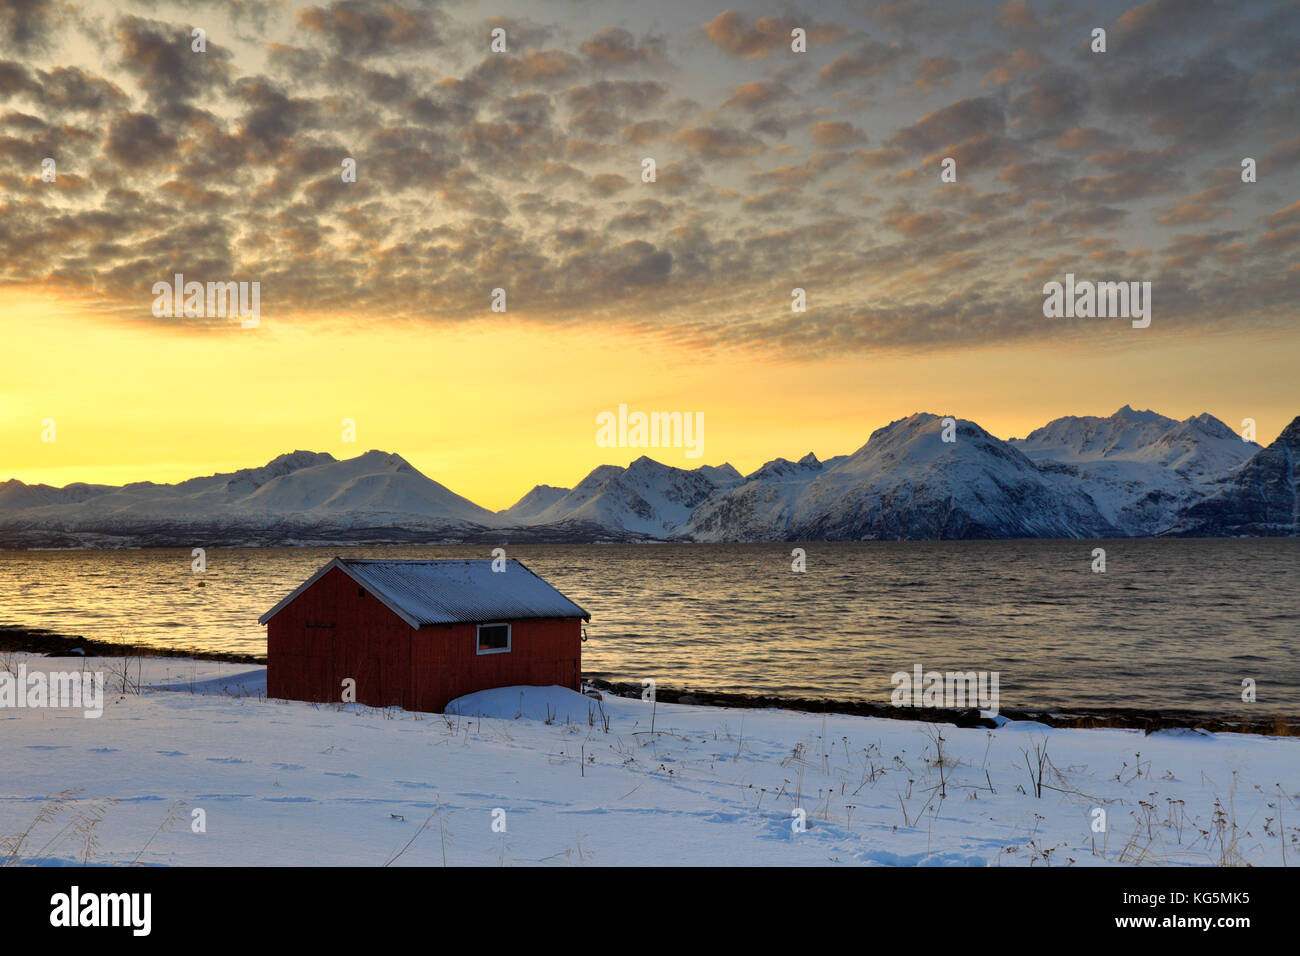 Naranja atardecer en las chozas de madera llamados Rorbu enmarcada por el mar congelado y picos nevados de los Alpes Lyngen Djupvik Tromsø Noruega Europa Foto de stock